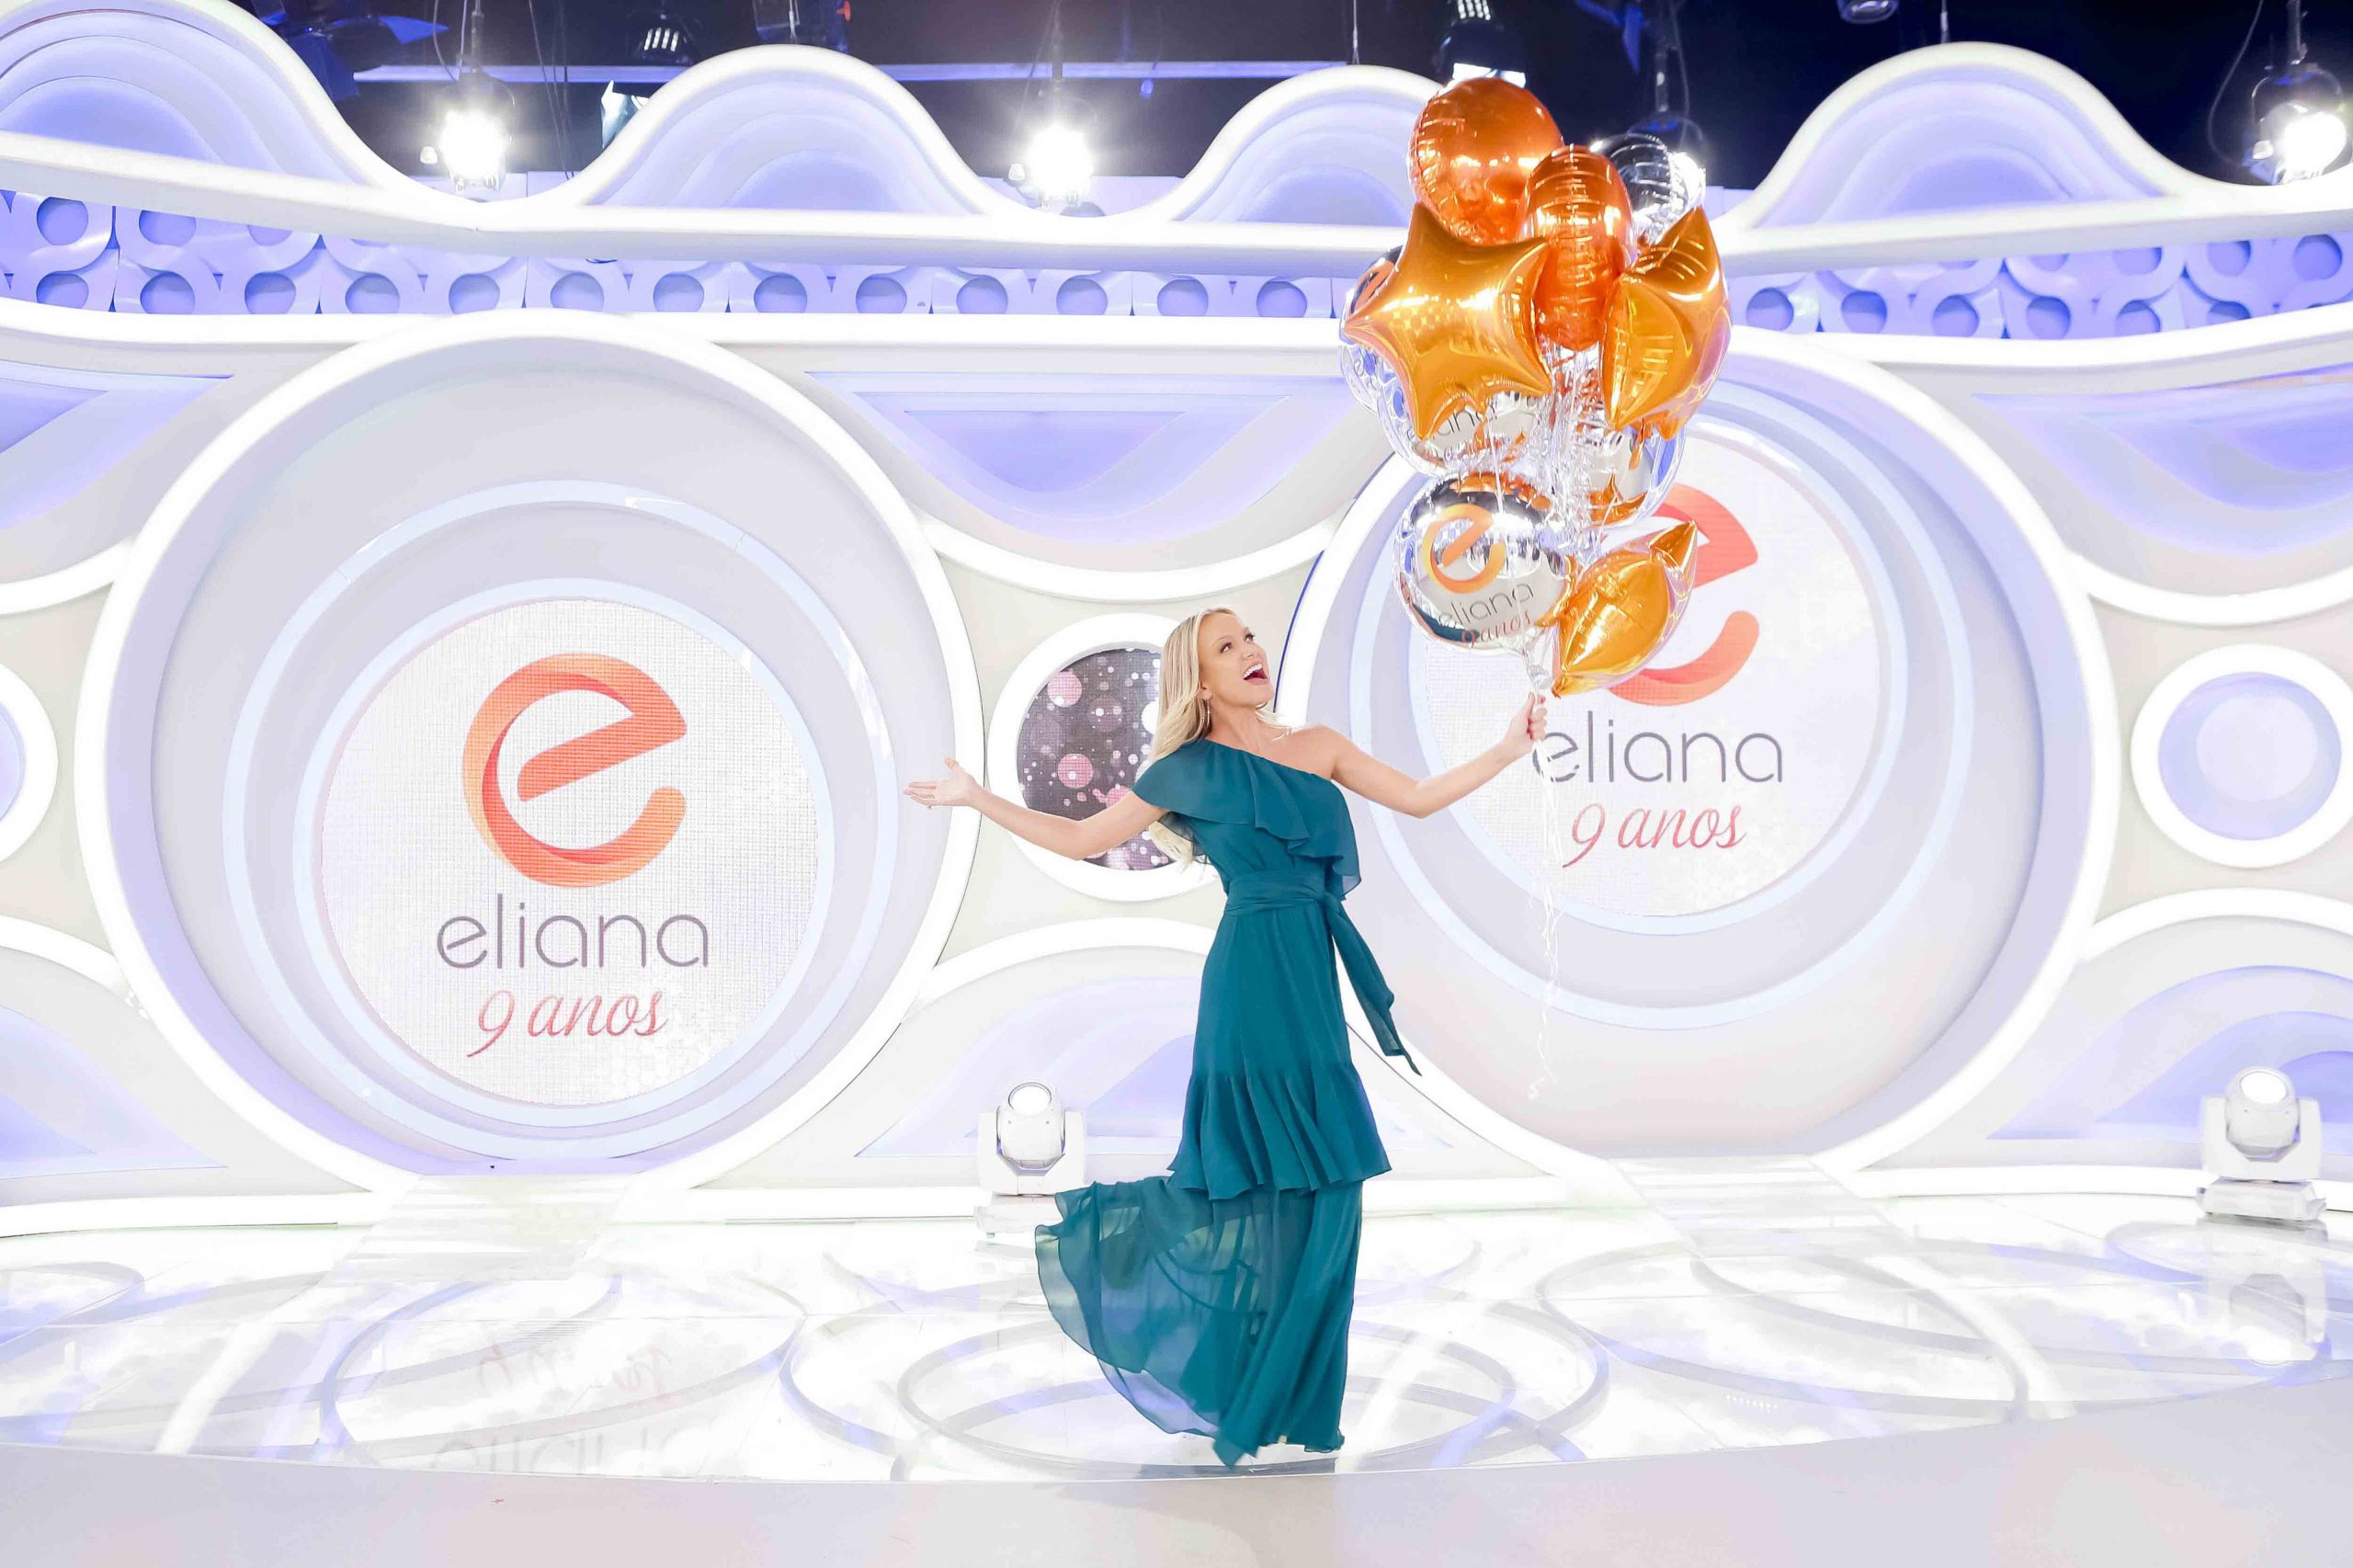 Audiência da TV: Eliana é vice isolada em agosto e acumula 10 meses em 2º lugar